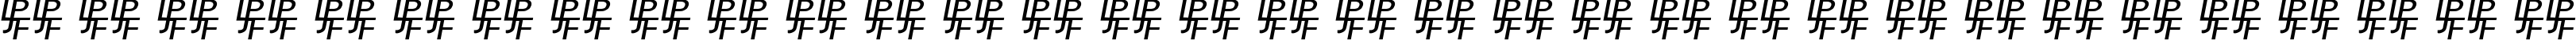 Пример написания русского алфавита шрифтом Birmingham Sans Serif